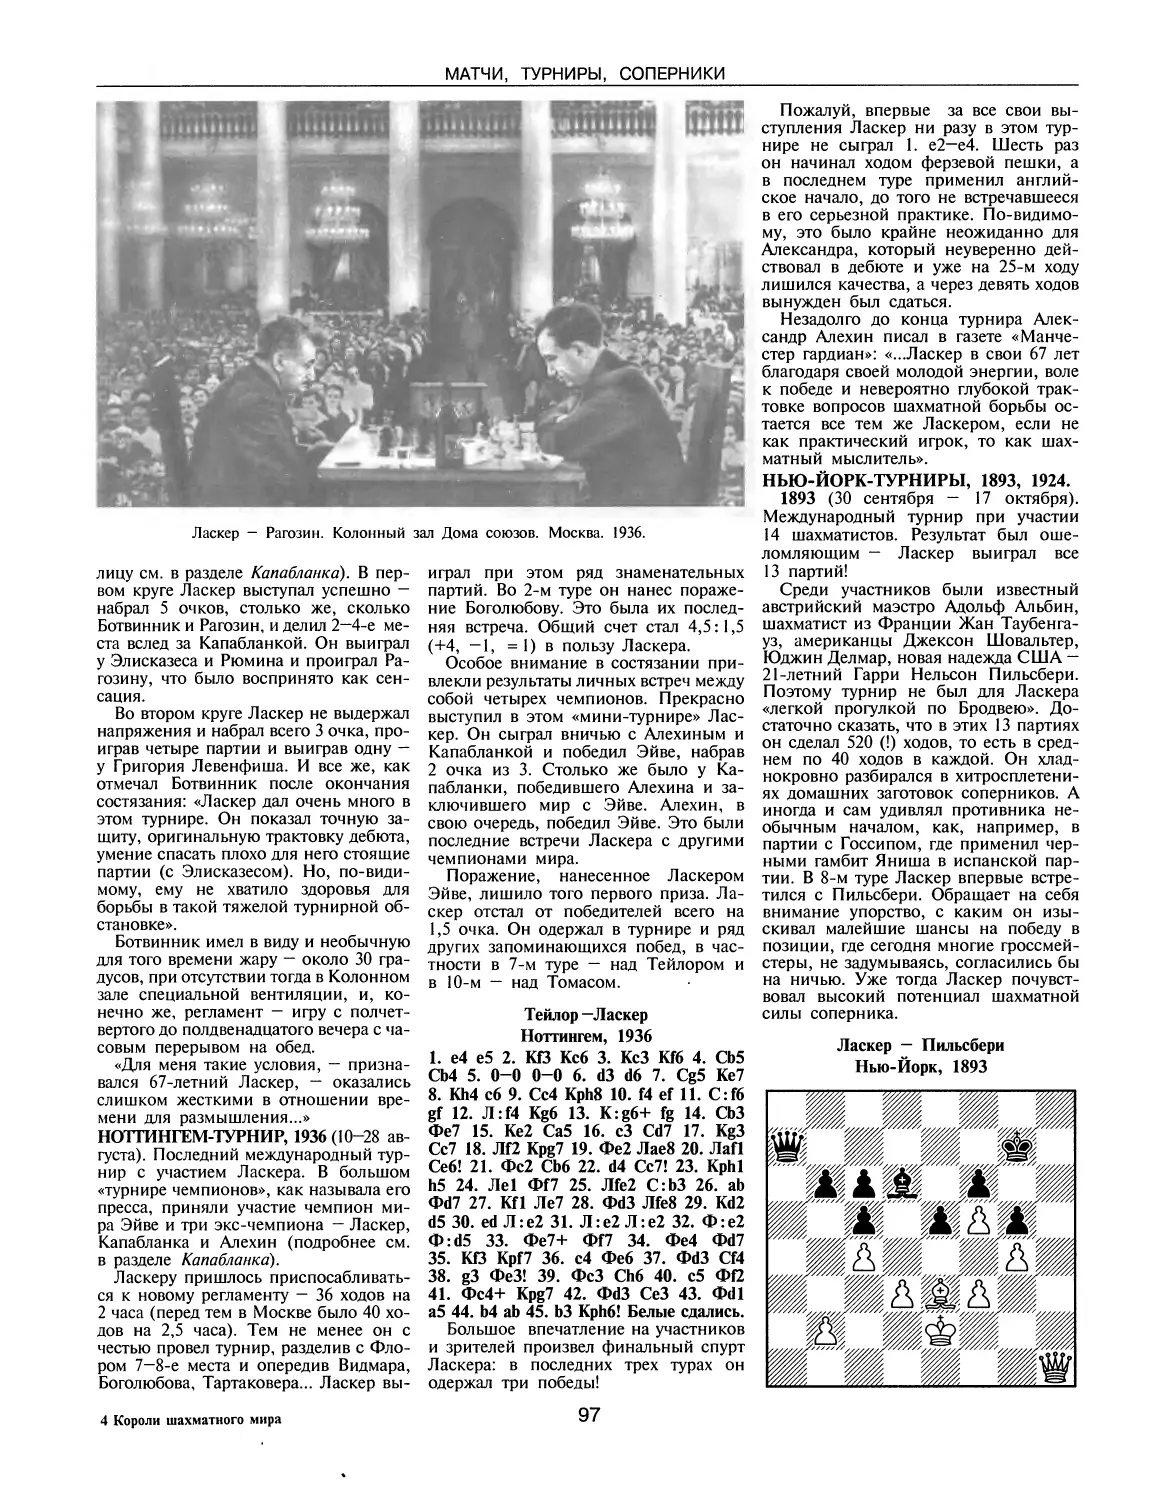 Ноттингем-турнир, 1936
Нью-Йорк-турниры, 1893, 1924